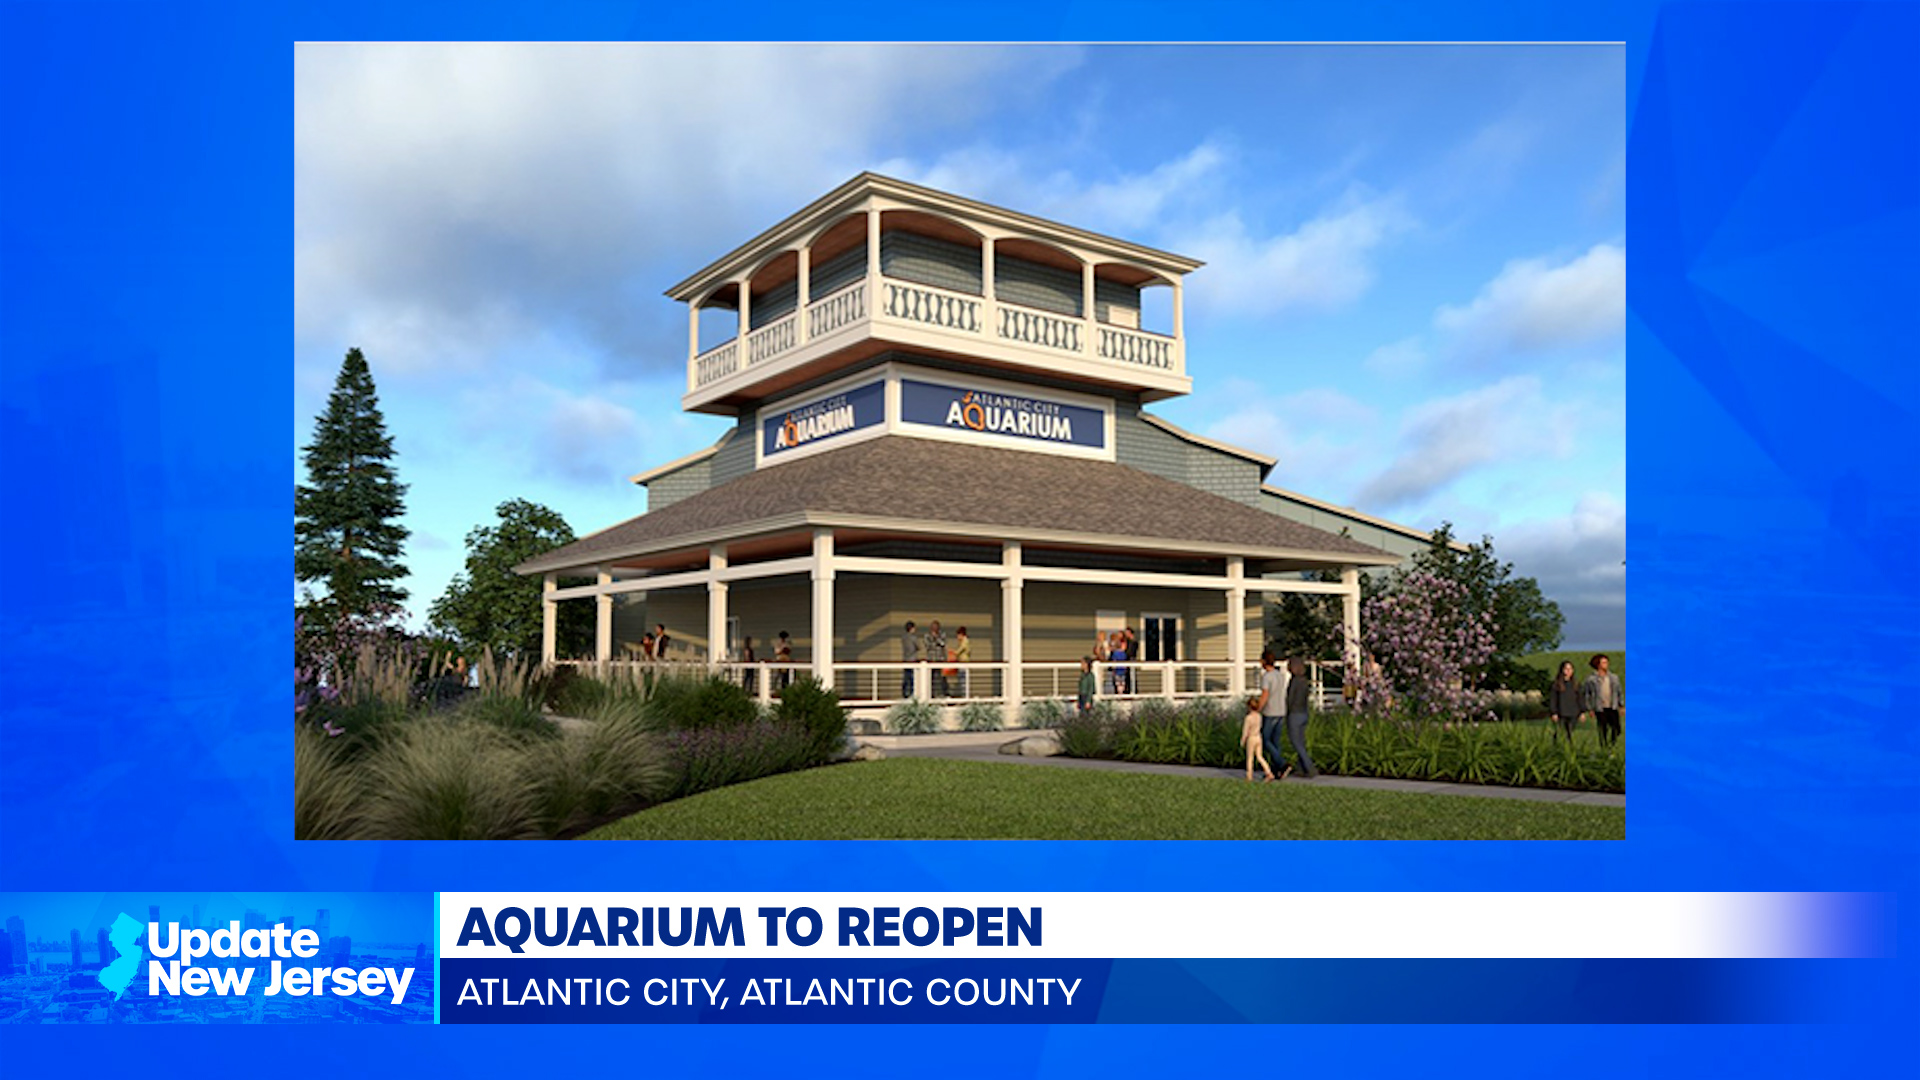 News Update: Aquarium Reopening